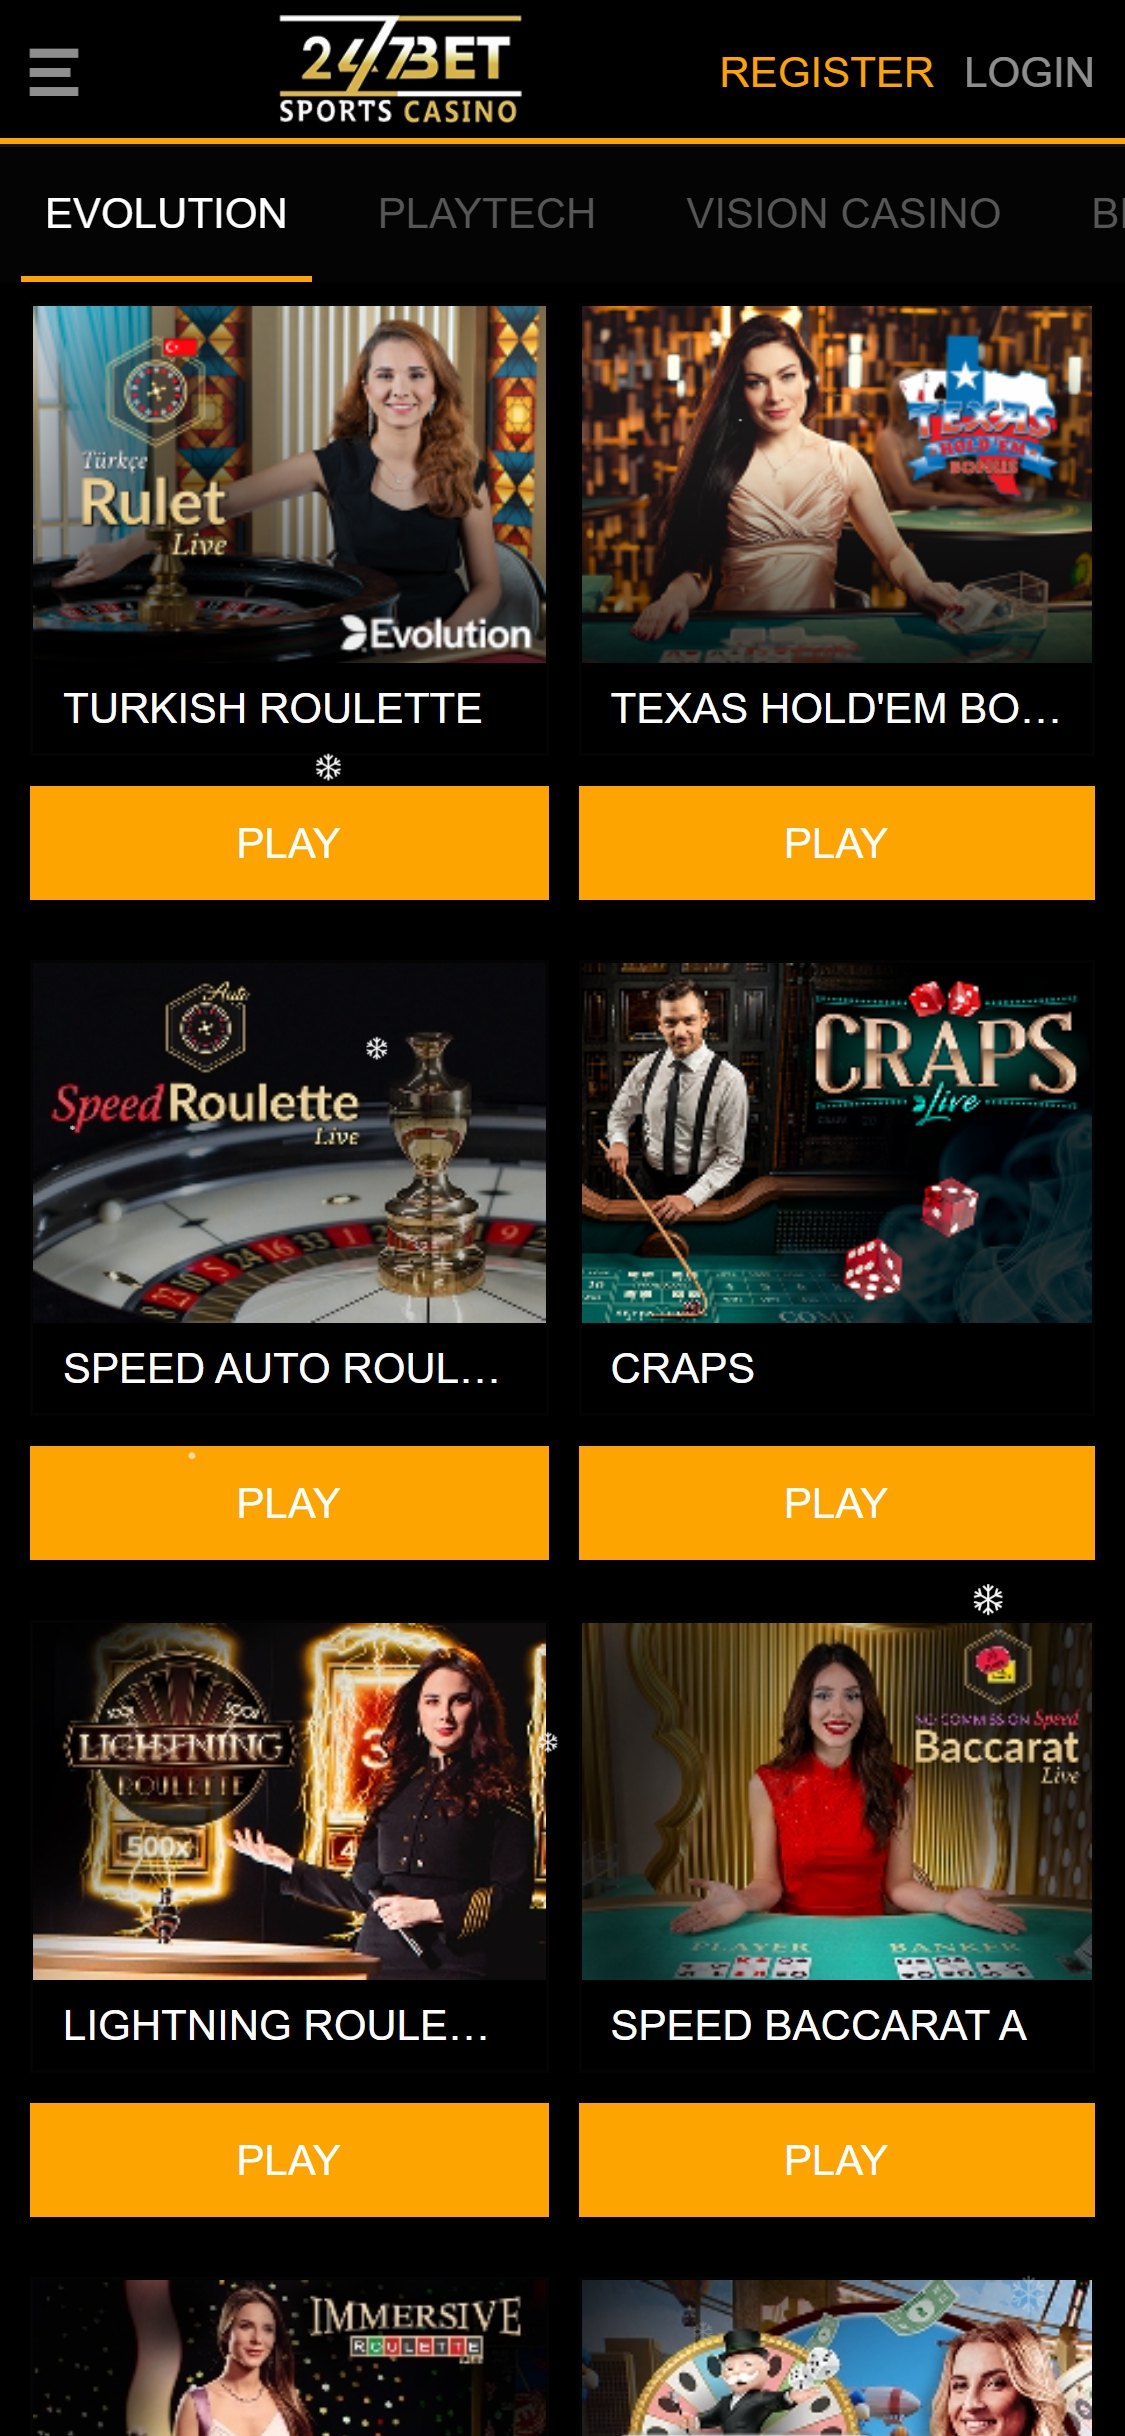 24/7 Bet Mobile Live Dealer Games Review